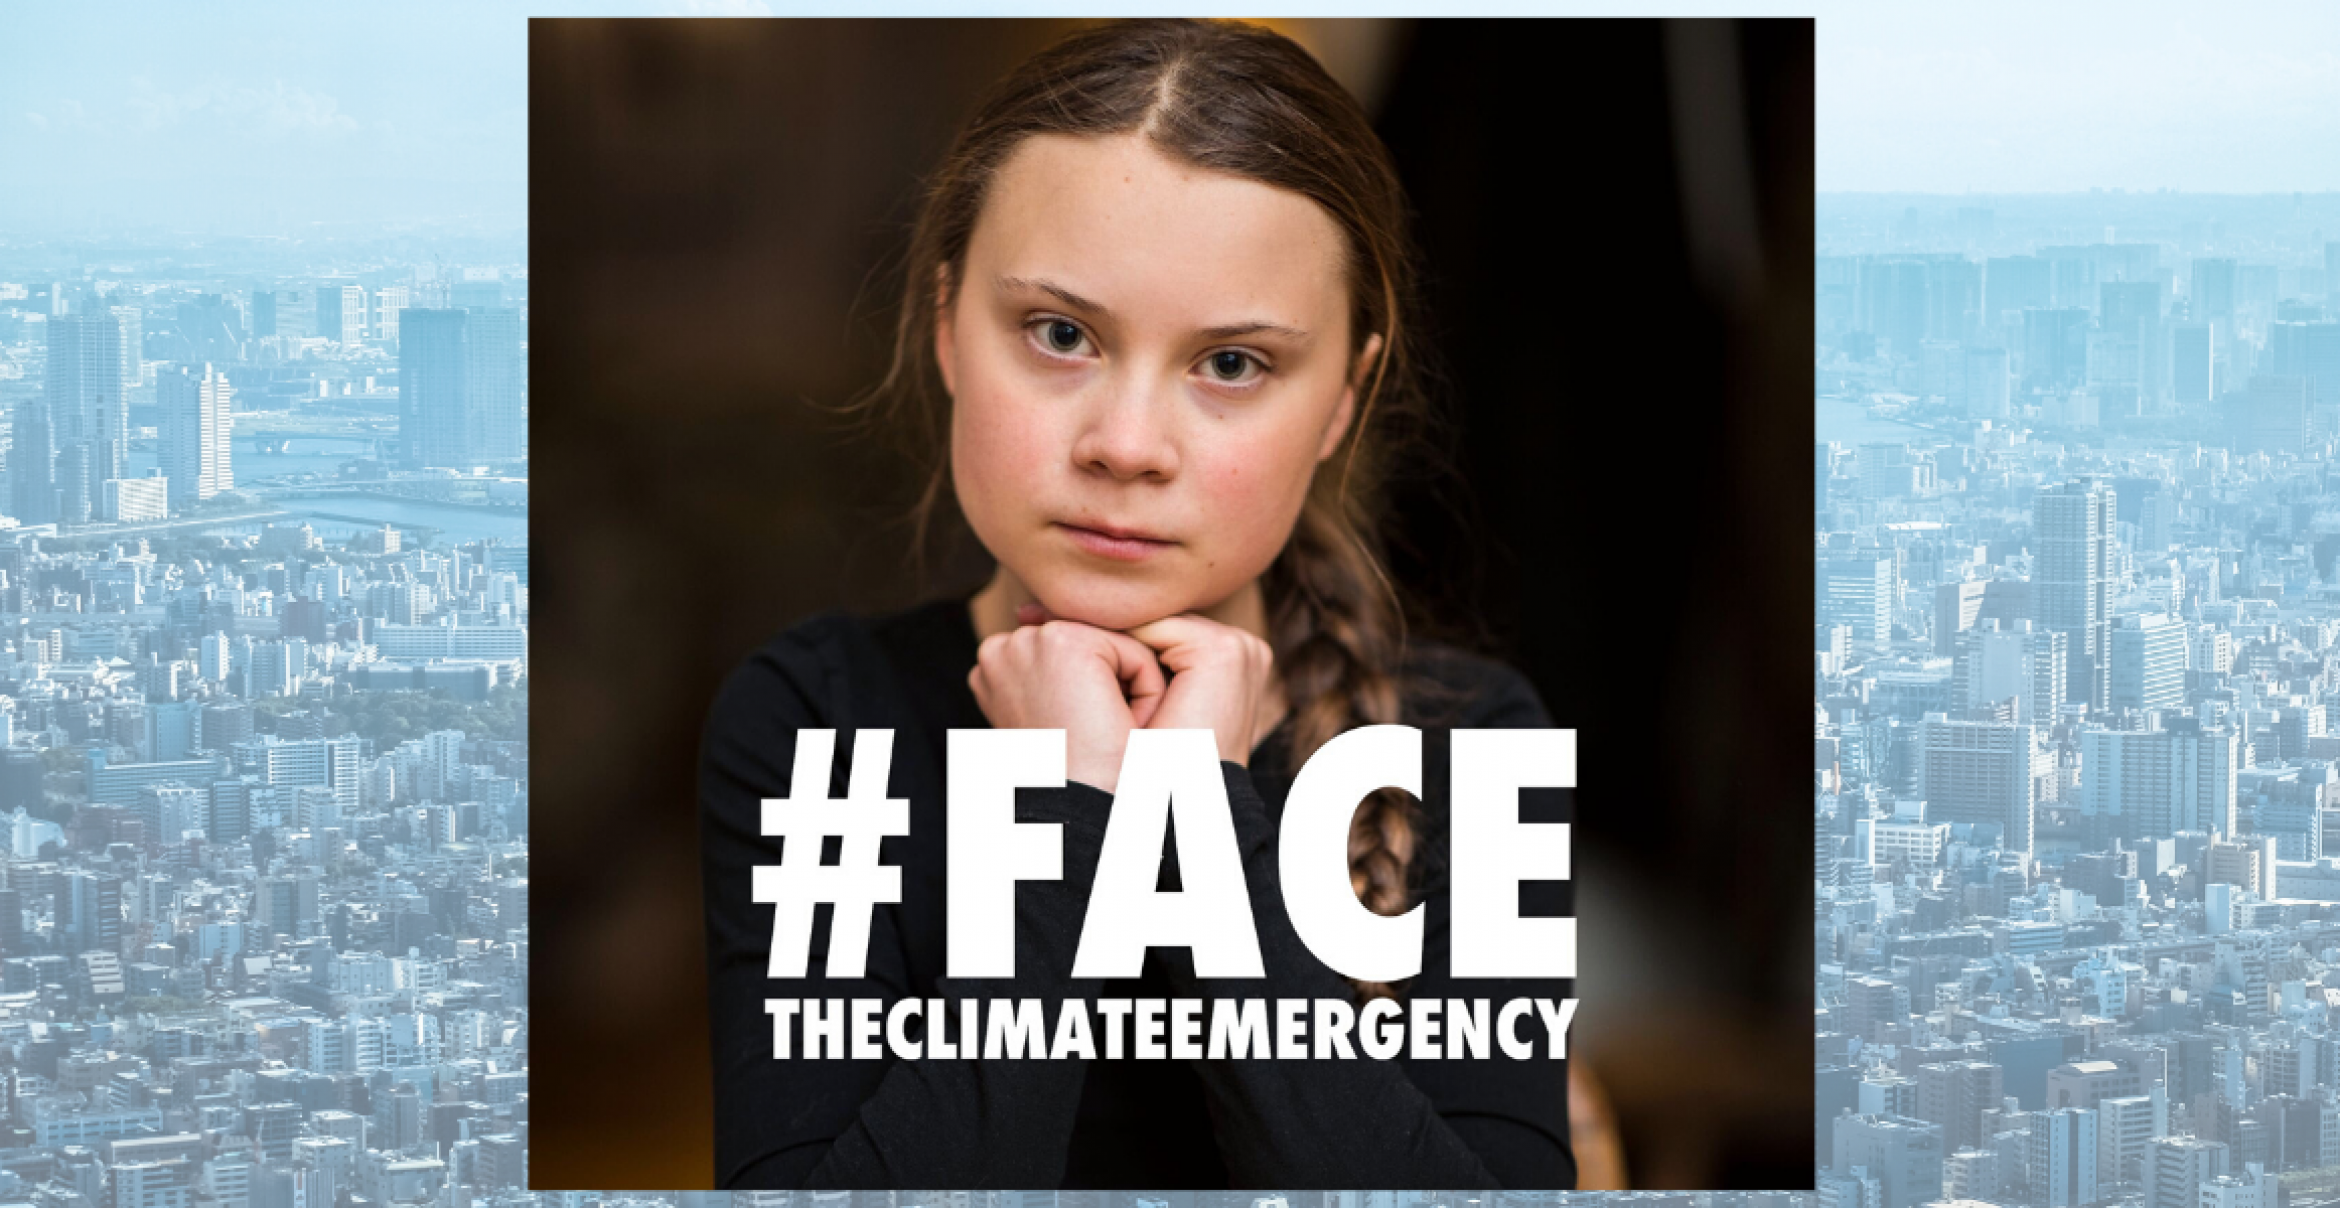 Offener Brief von Greta Thunberg und anderen Klimaaktivist*innen: Es muss sofort etwas passieren